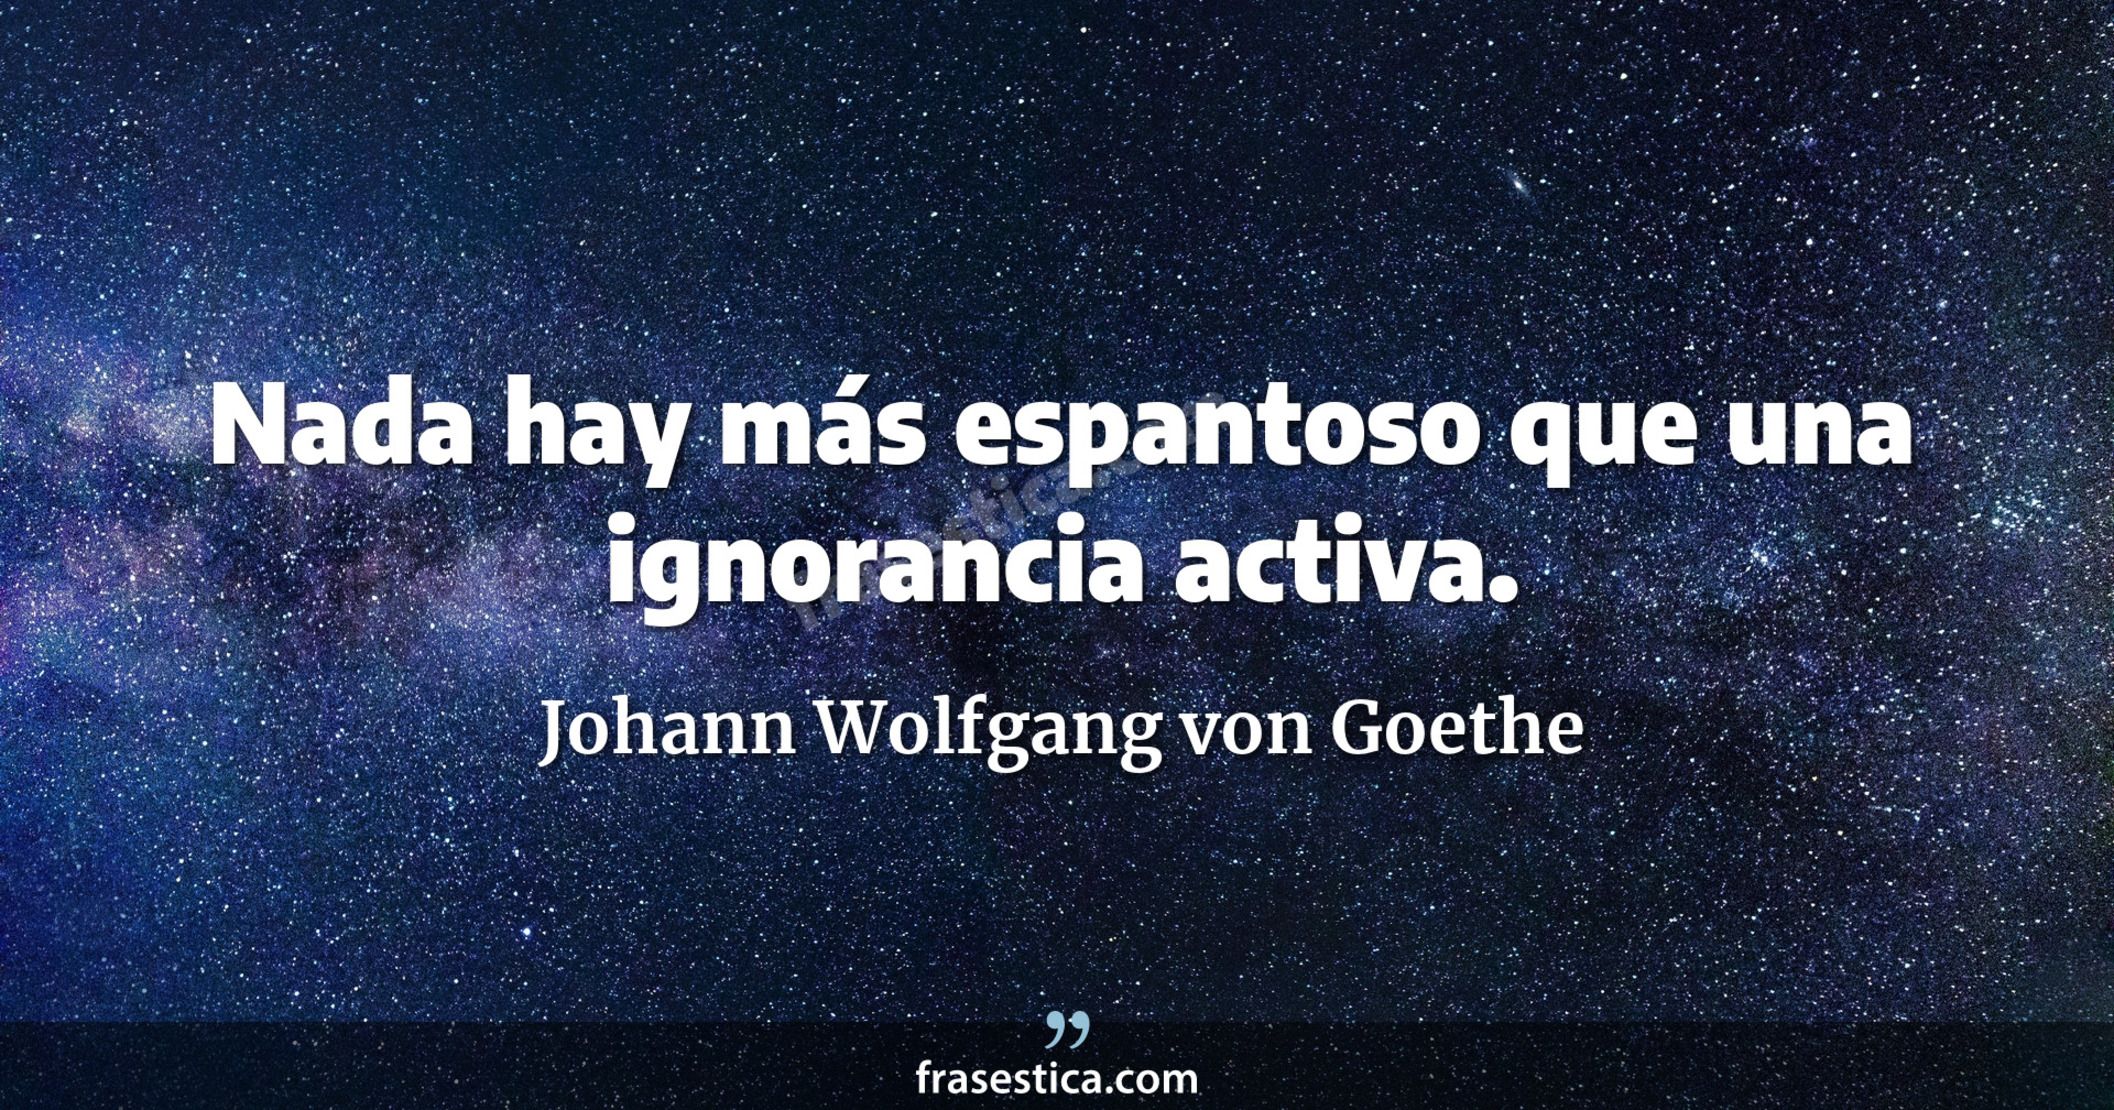 Nada hay más espantoso que una ignorancia activa. - Johann Wolfgang von Goethe